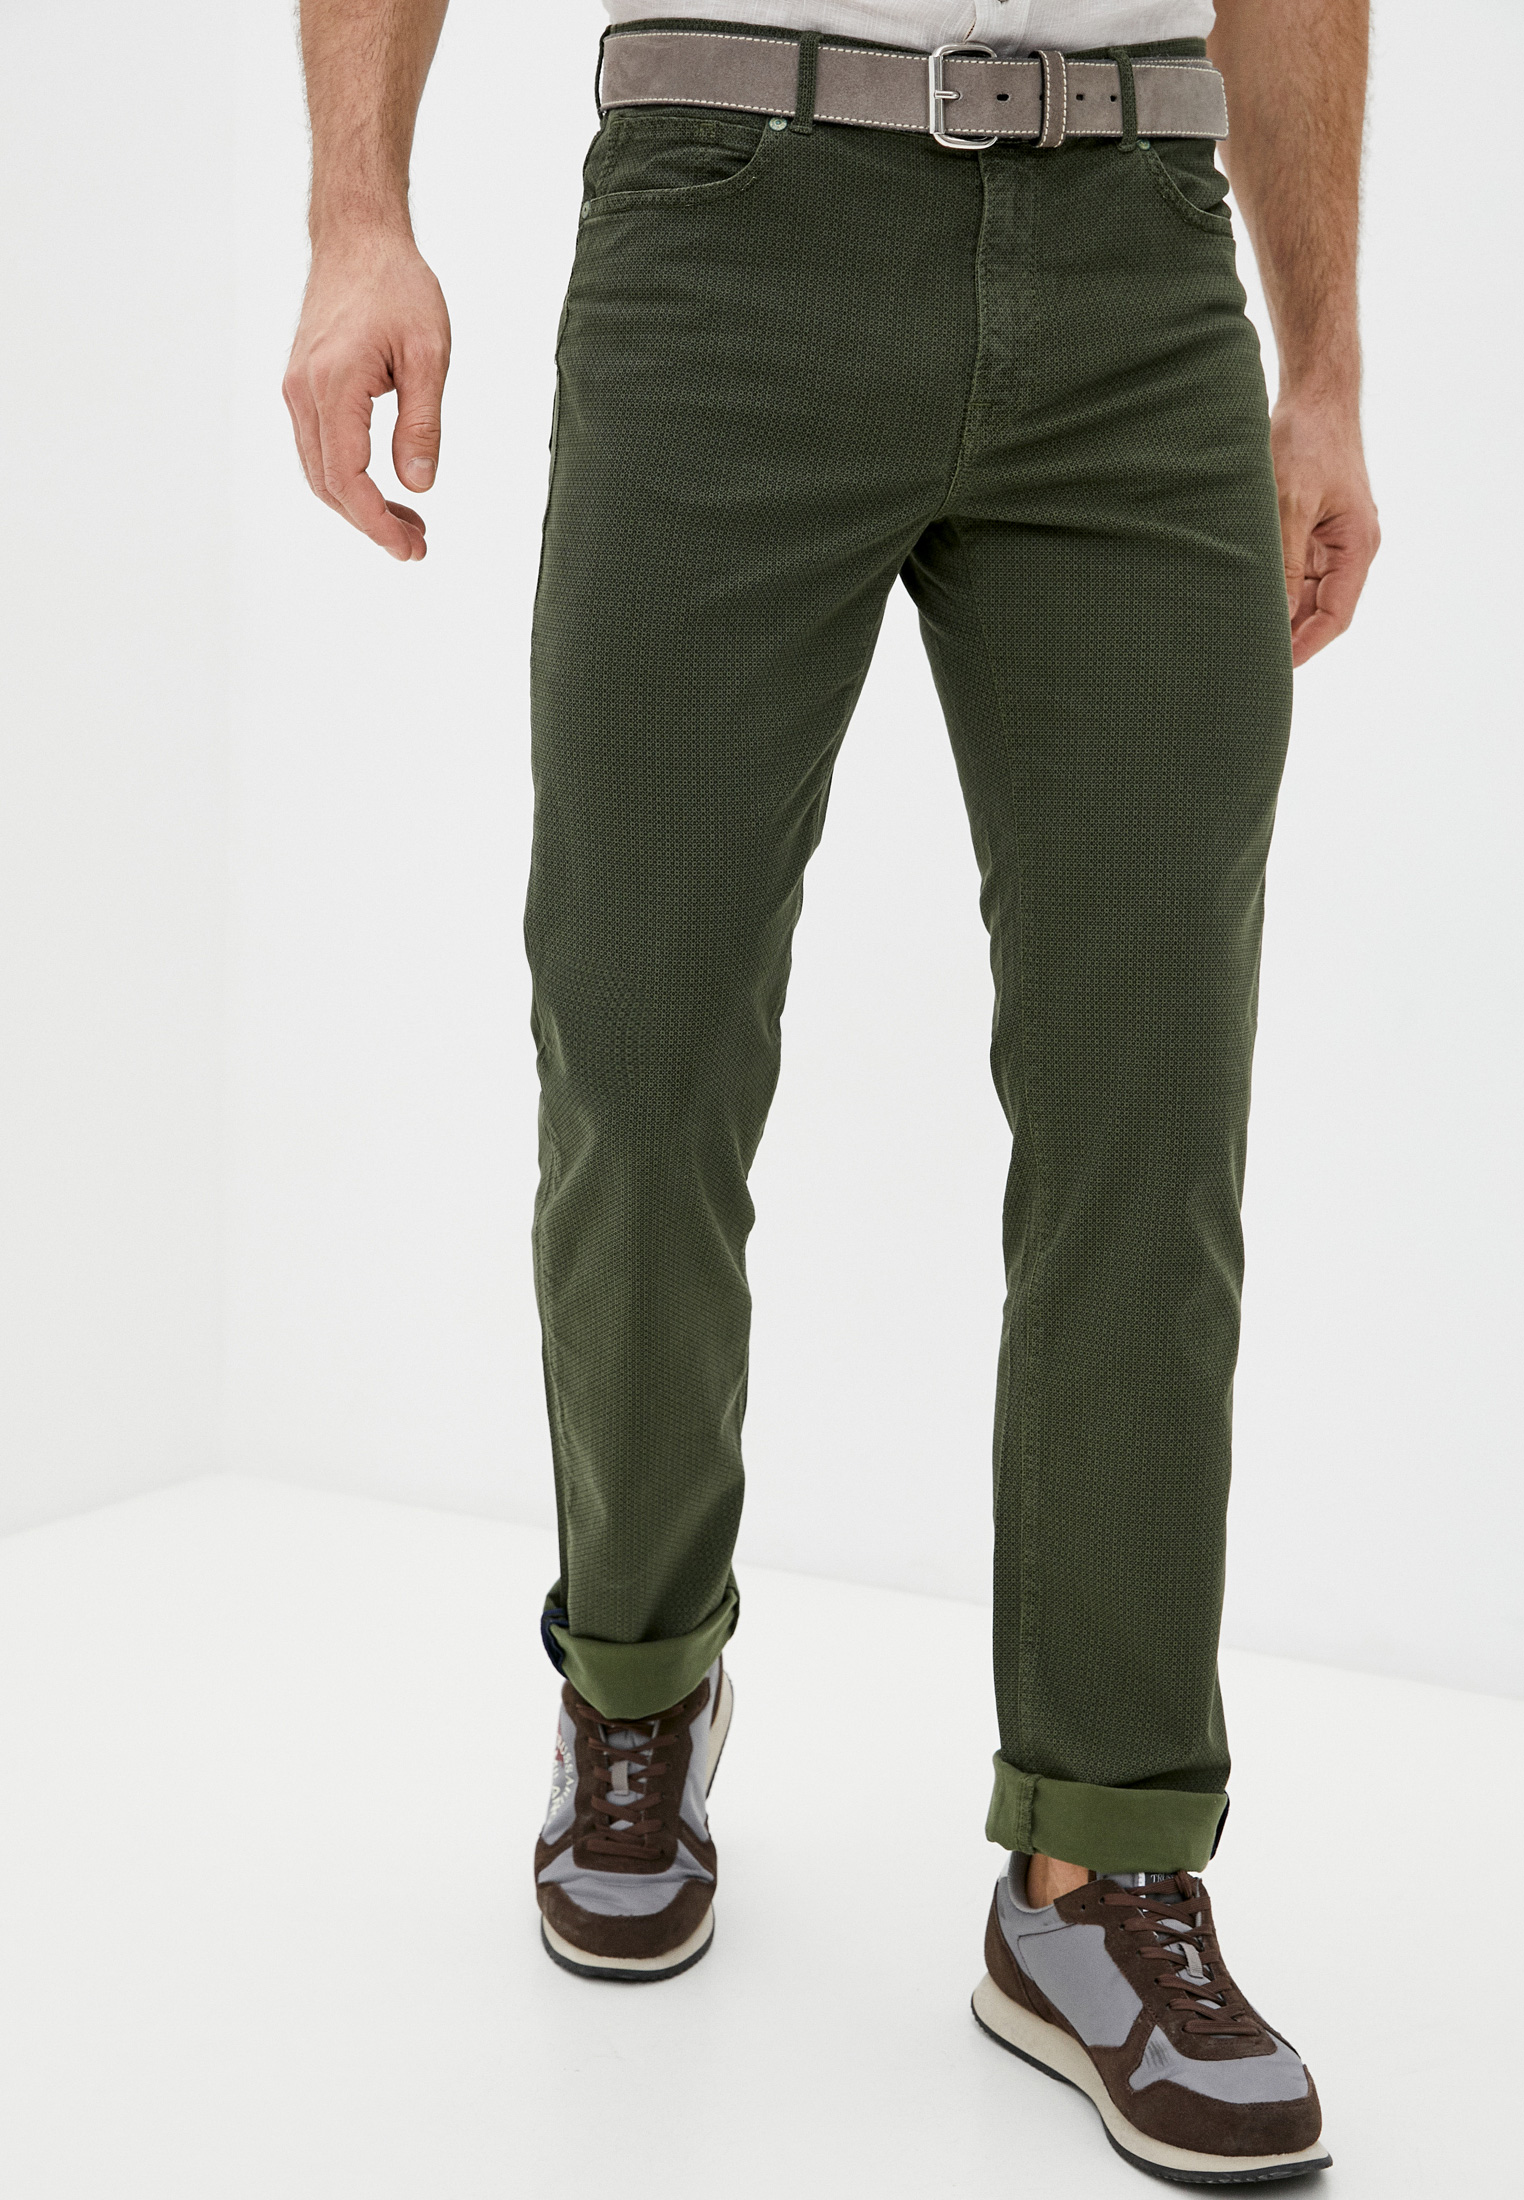 Мужские повседневные брюки Trussardi (Труссарди) 52J00004-1T001481-H-001: изображение 1